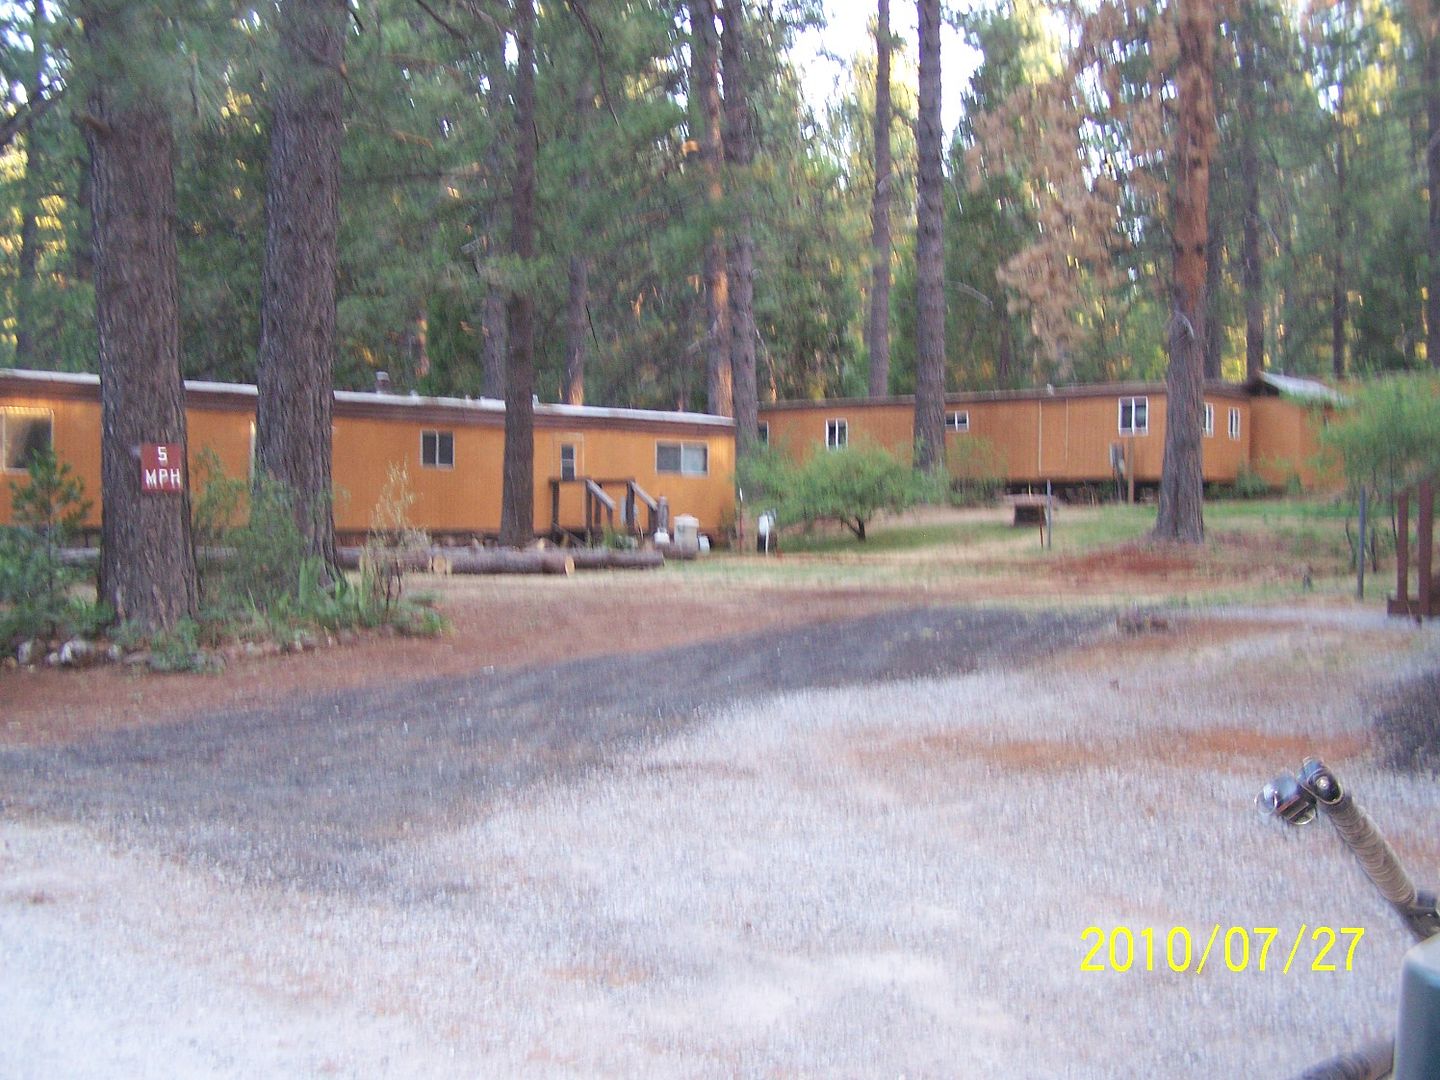 000_0161.jpg Campground in Millville